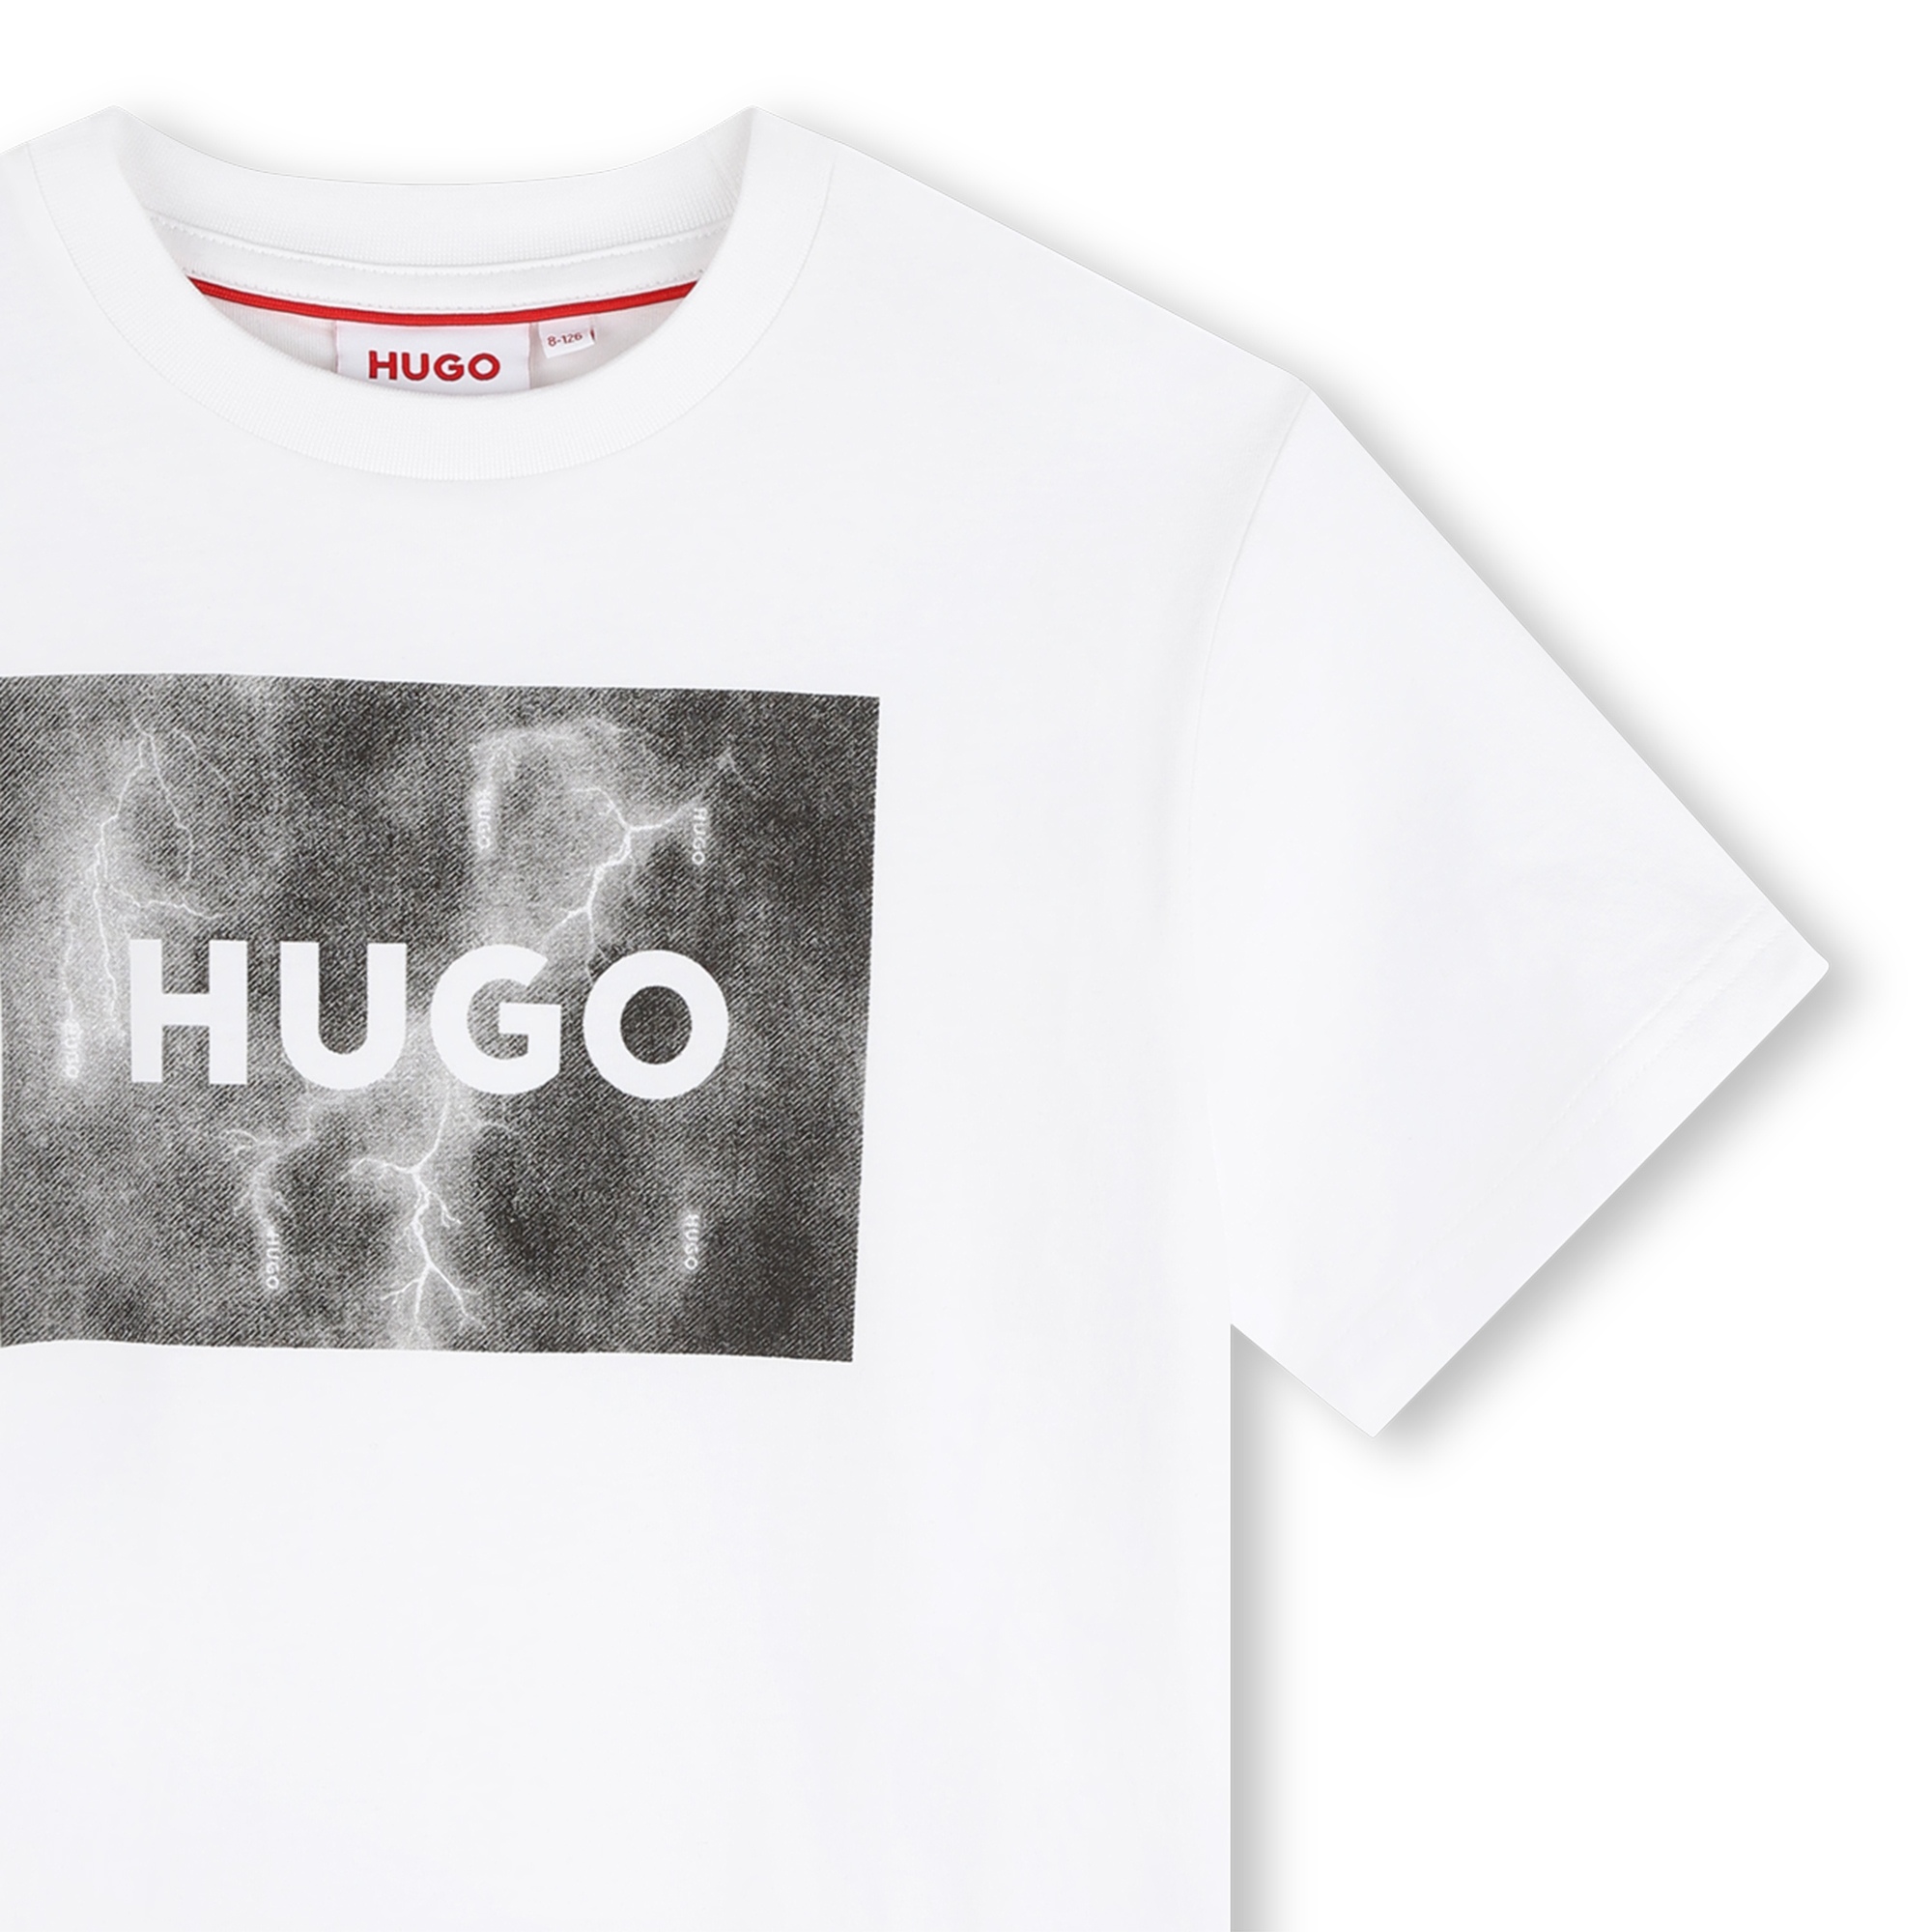 Short-sleeved T-shirt HUGO for BOY